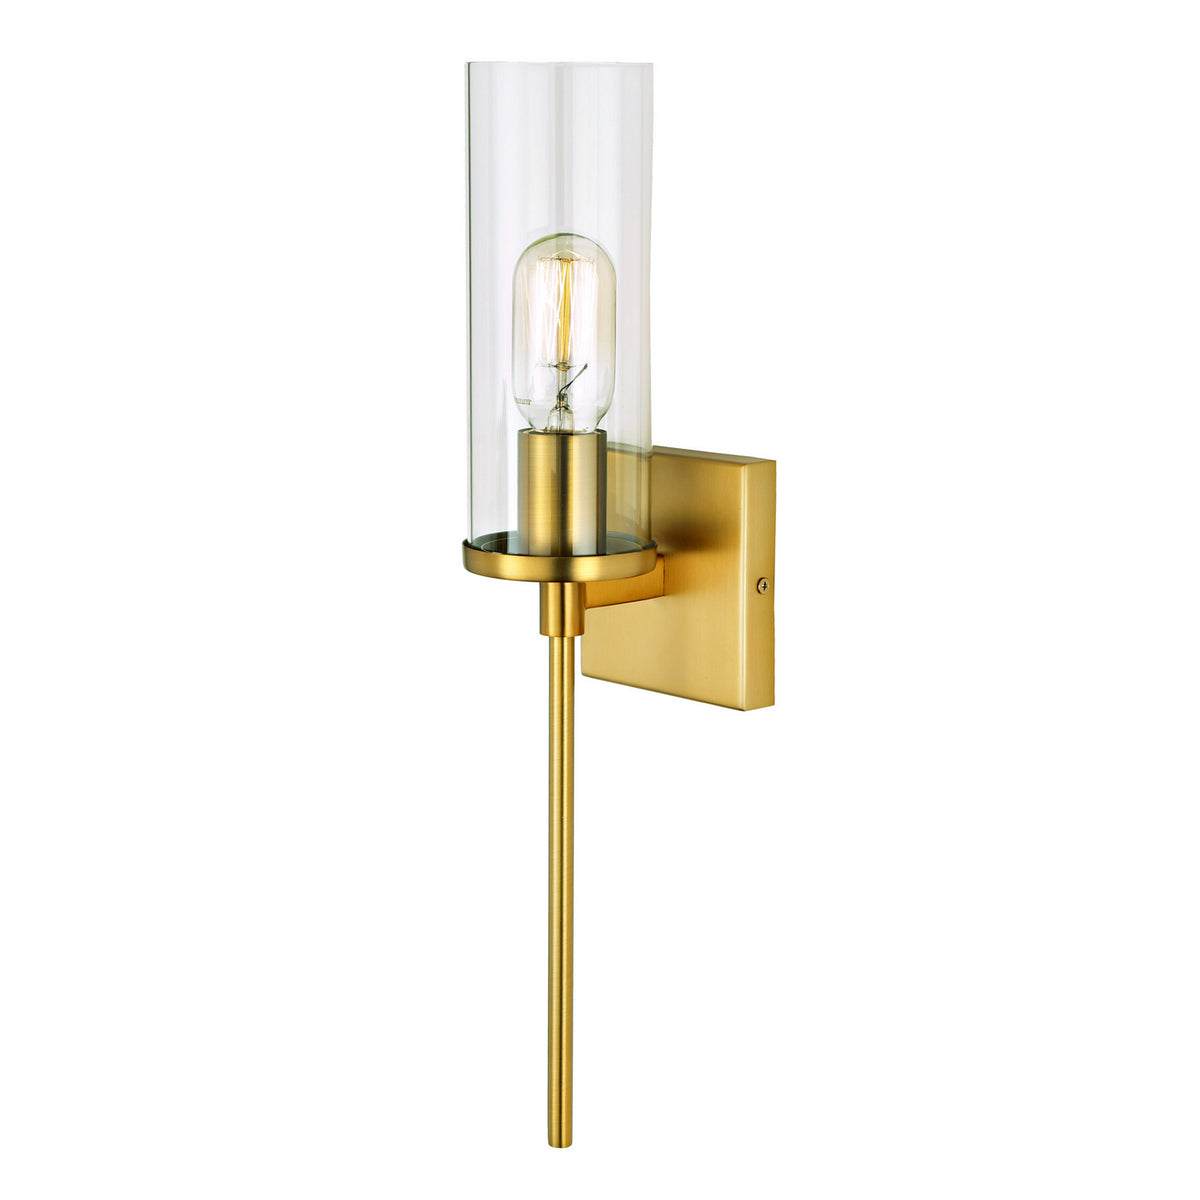 JVI Designs - 537-10 - One Light Wall Sconce - Kent - Satin Brass